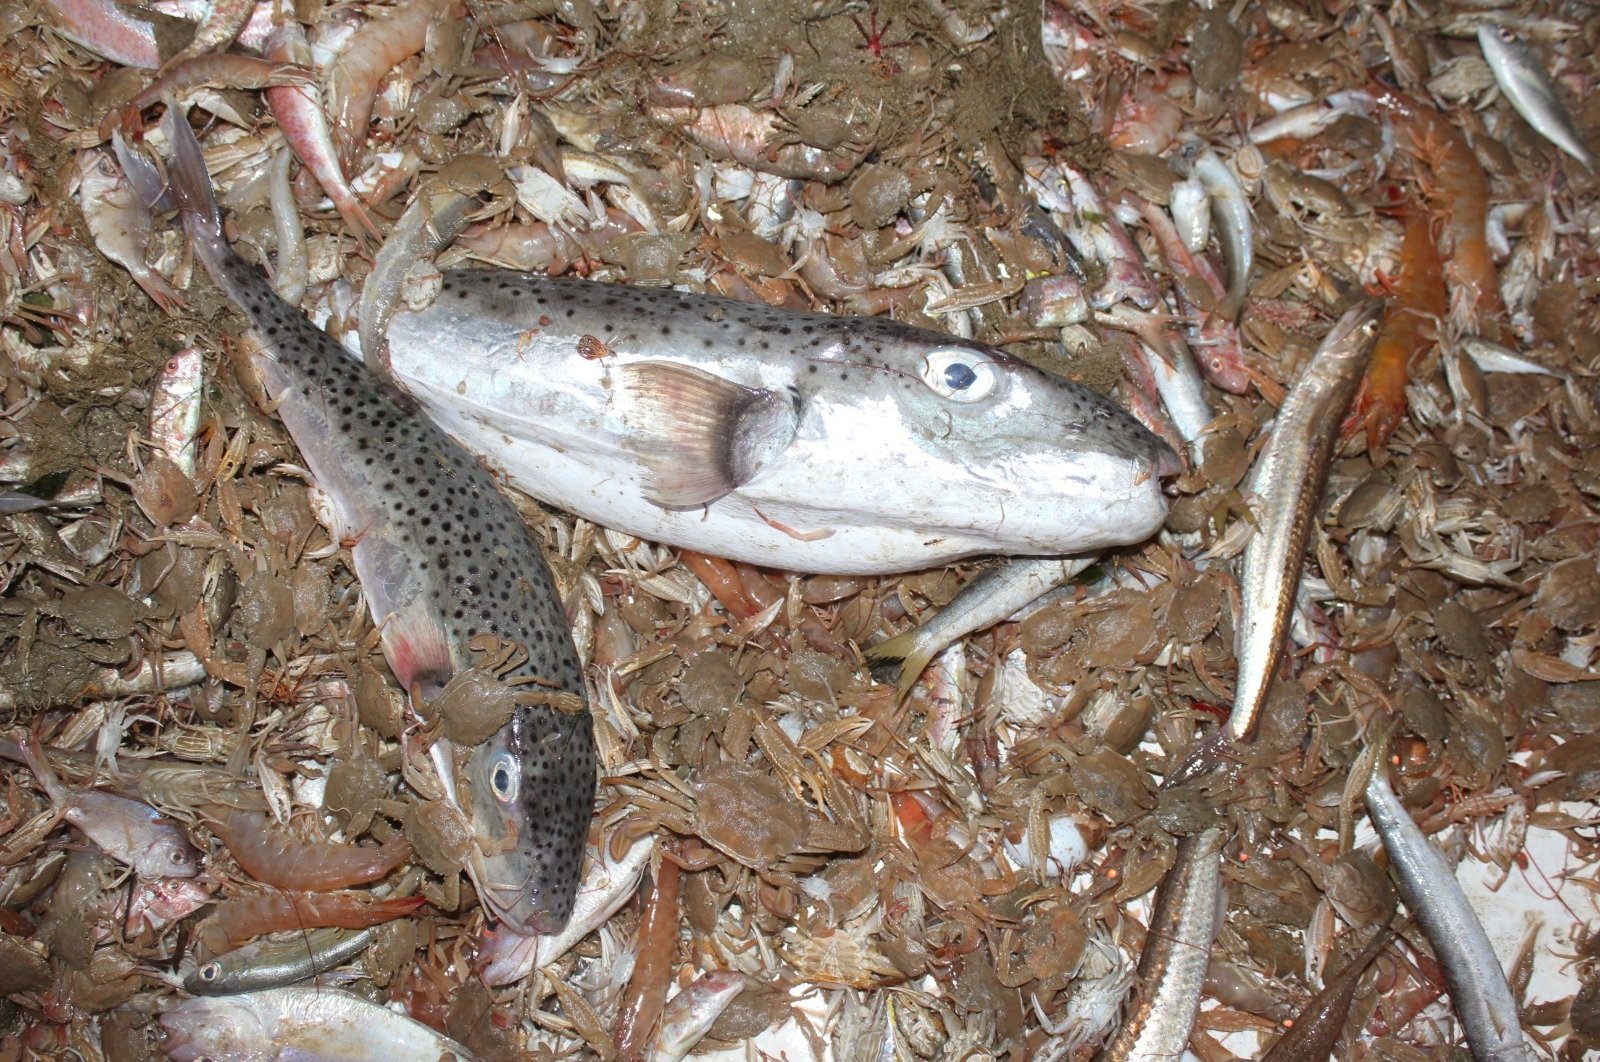 Melawan ikan kodok beracun dan invasif di Turki membuahkan hasil